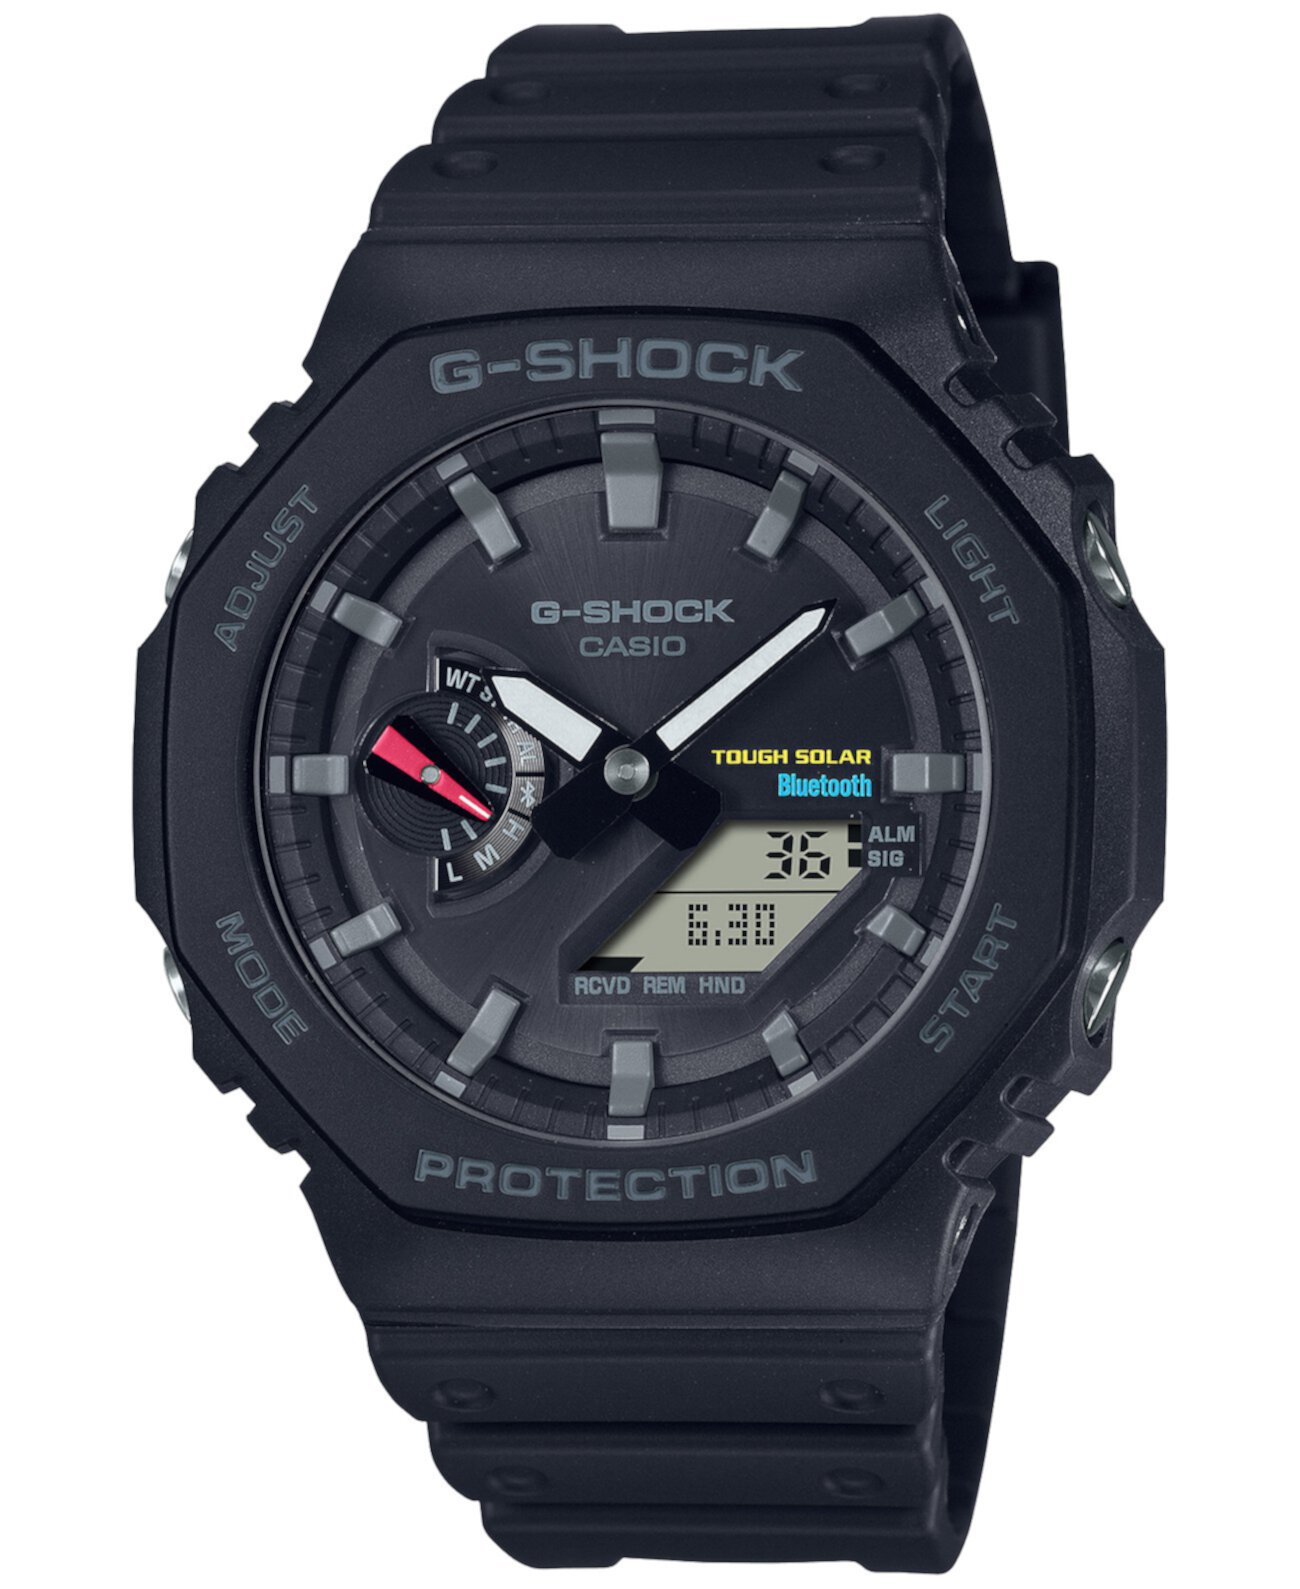 Мужские аналоговые цифровые часы с черным полимерным ремешком, 46 мм, GAB2100-1A G-Shock